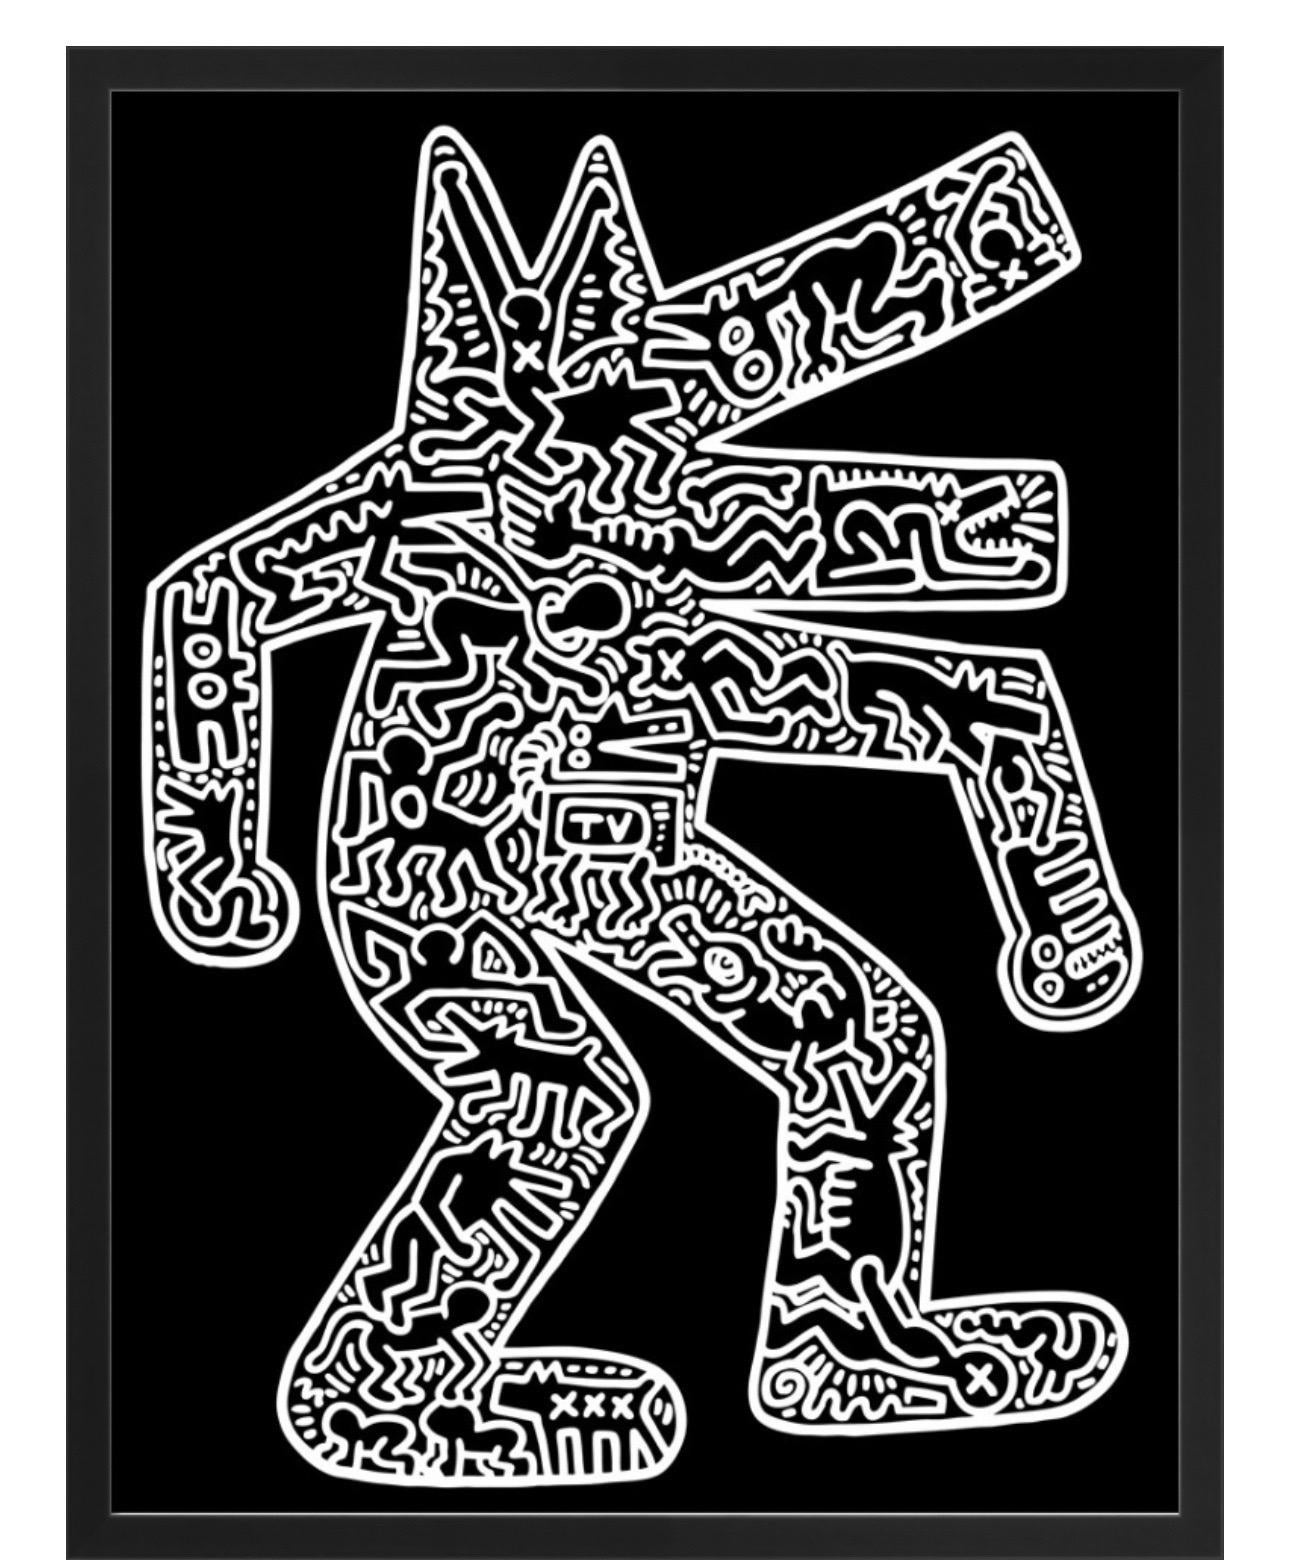 Keith Haring, chien, 1985 (encadré

48 x 63cm

Impression giclée sur papier numérique de conservation mat de 250 g/m² fabriqué en Allemagne à partir de pâte de bois sans acide ni chlore. Fabriqué sur une machine Fourdrinier mise au point par les